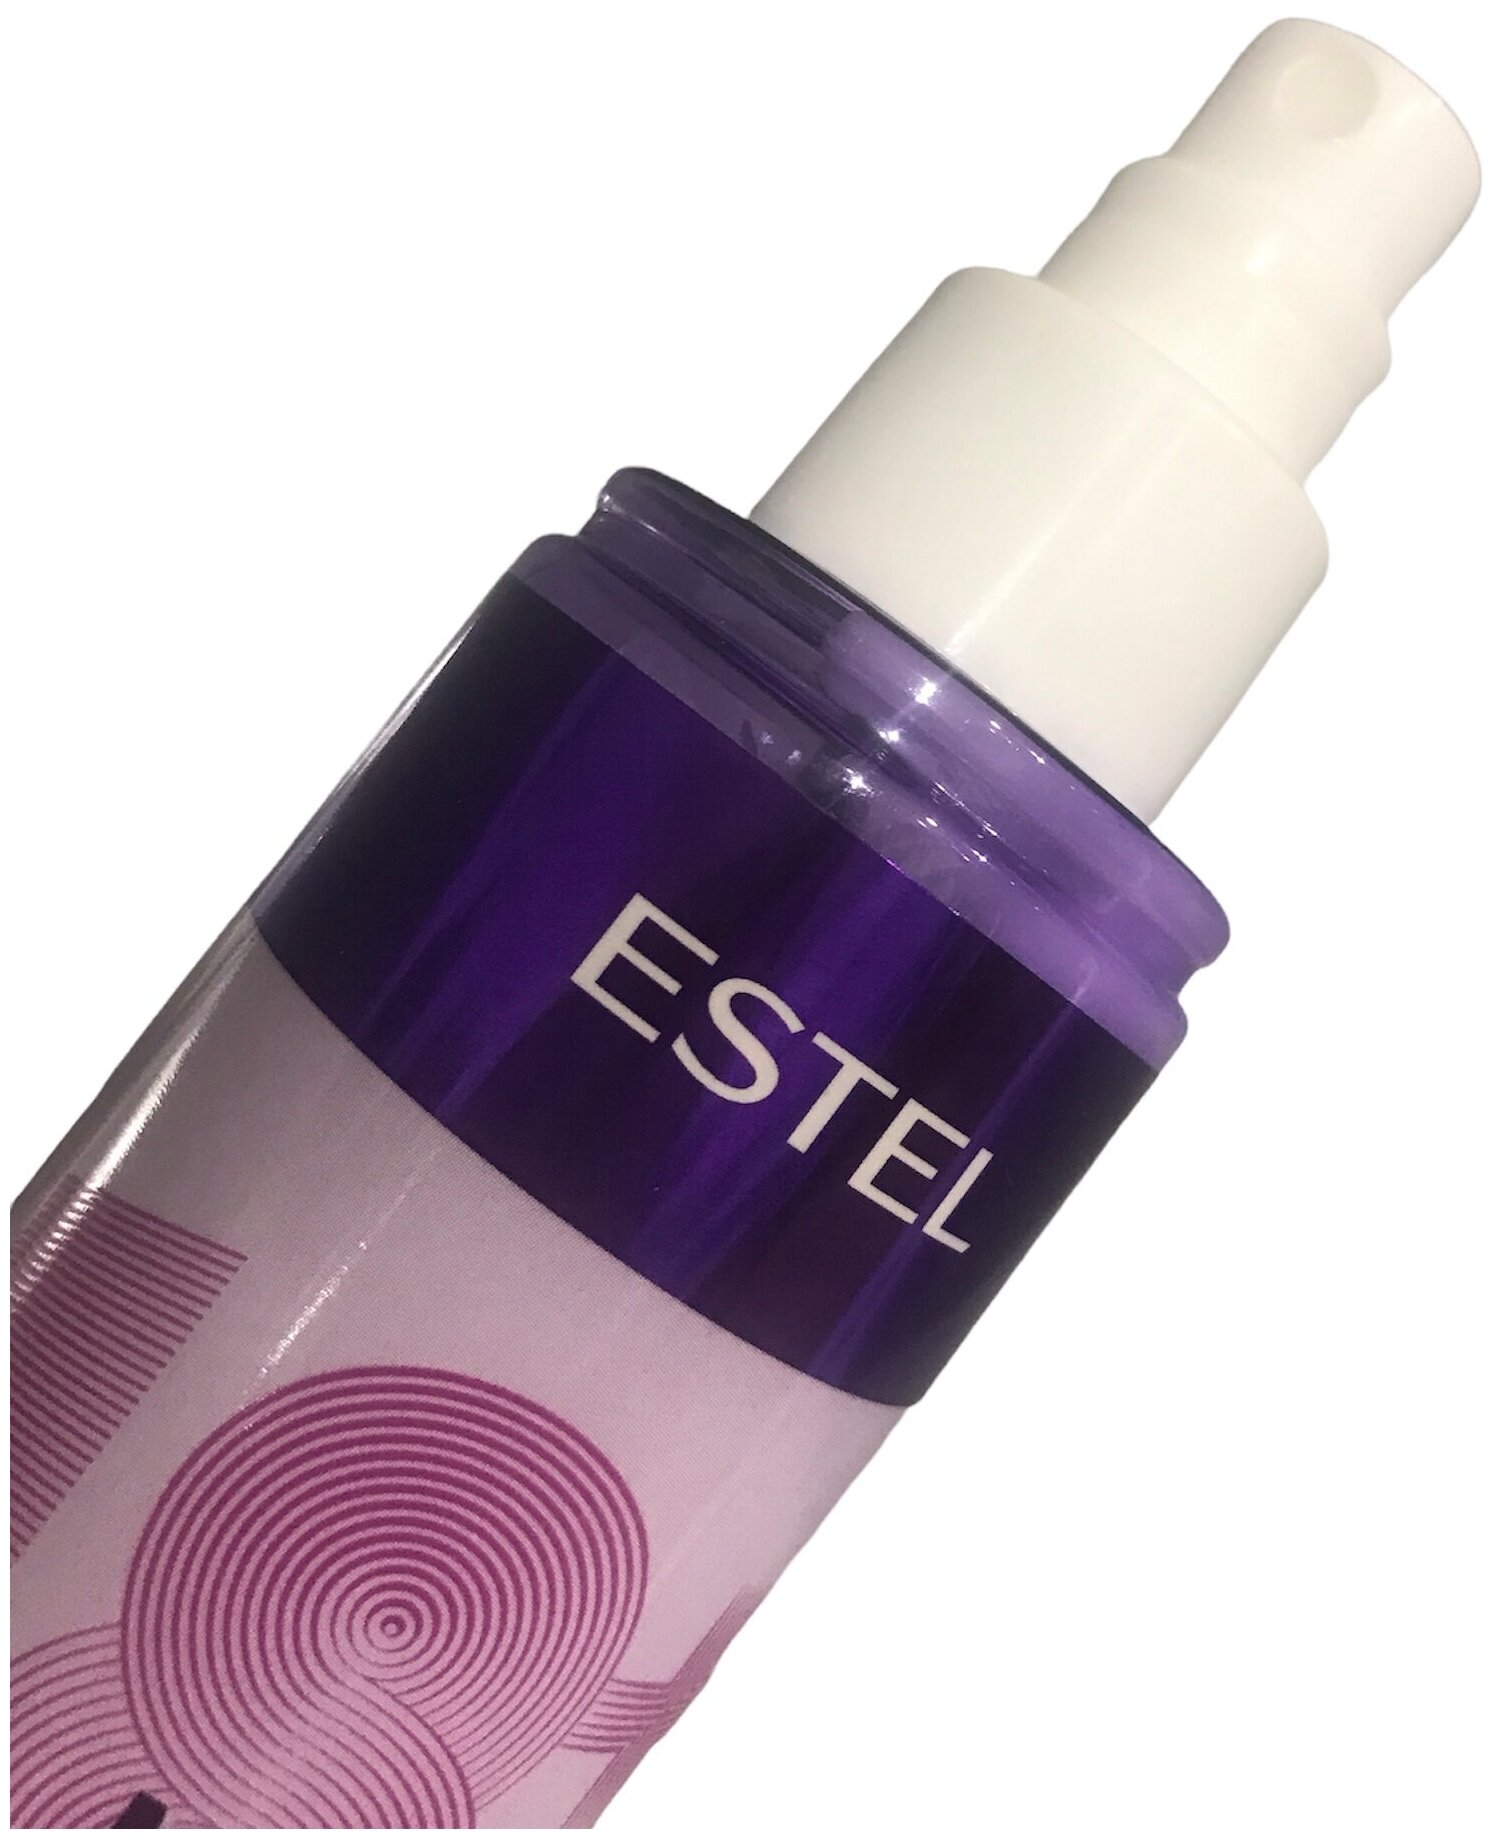 ESTEL Увлажняющий спрей ESTEL 18+ PLUS термозащита для волос, лёгкое расчёсывание, 200 мл